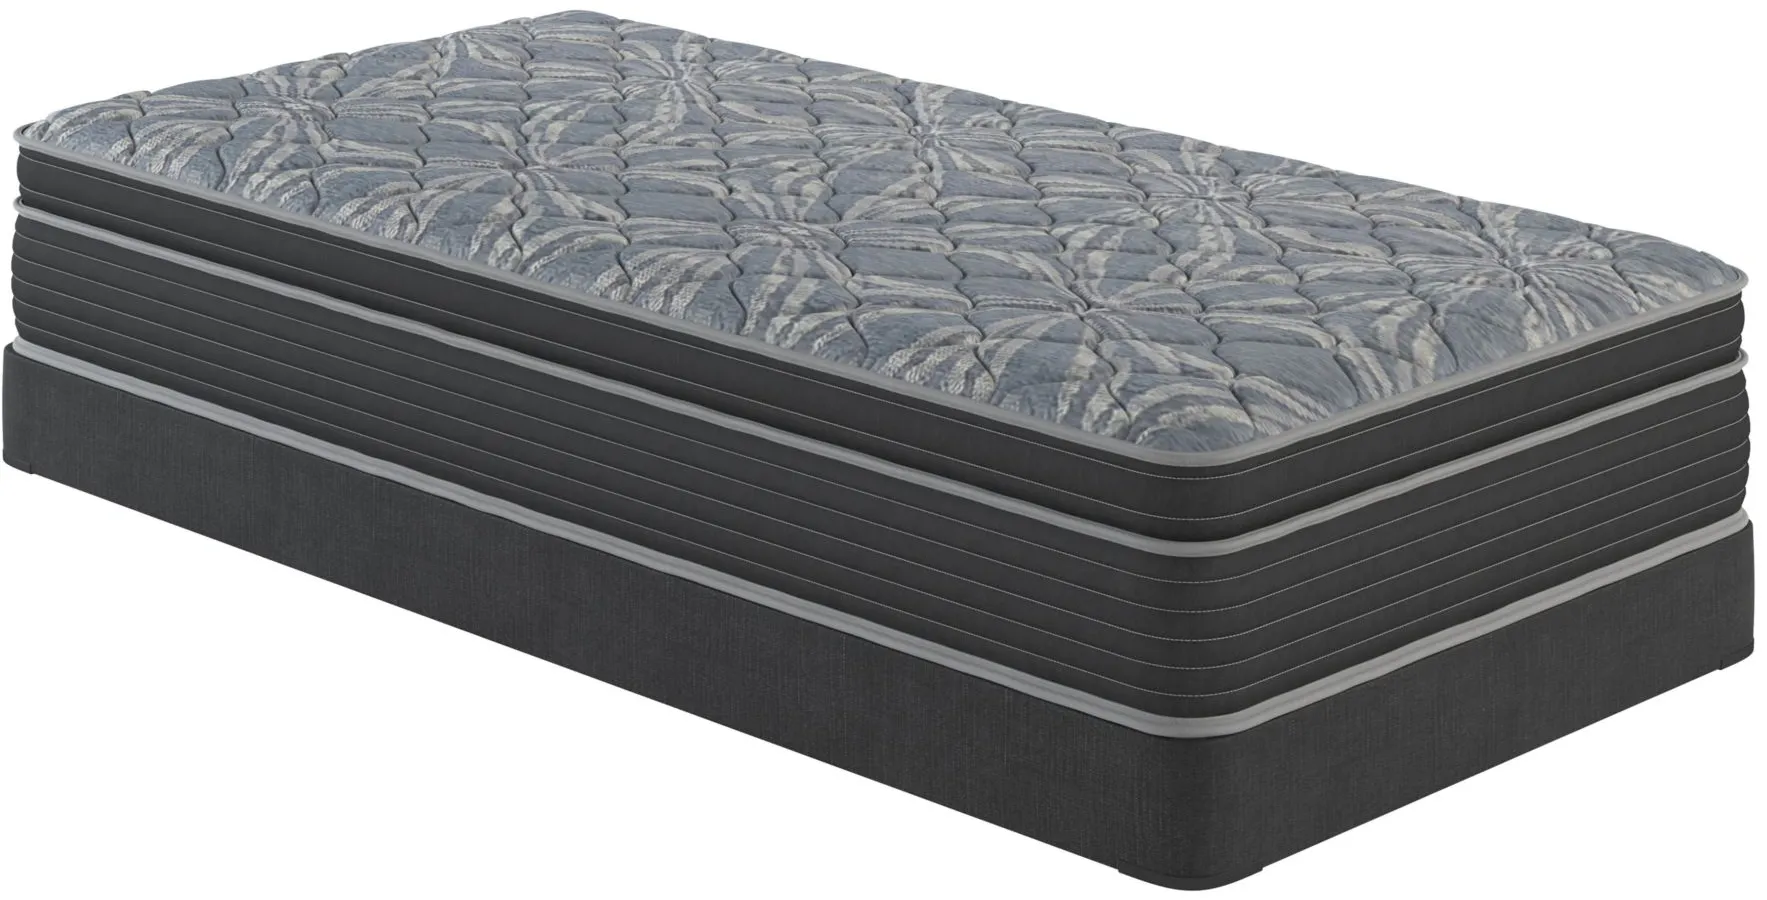 bellanest dahlia mattress reviews